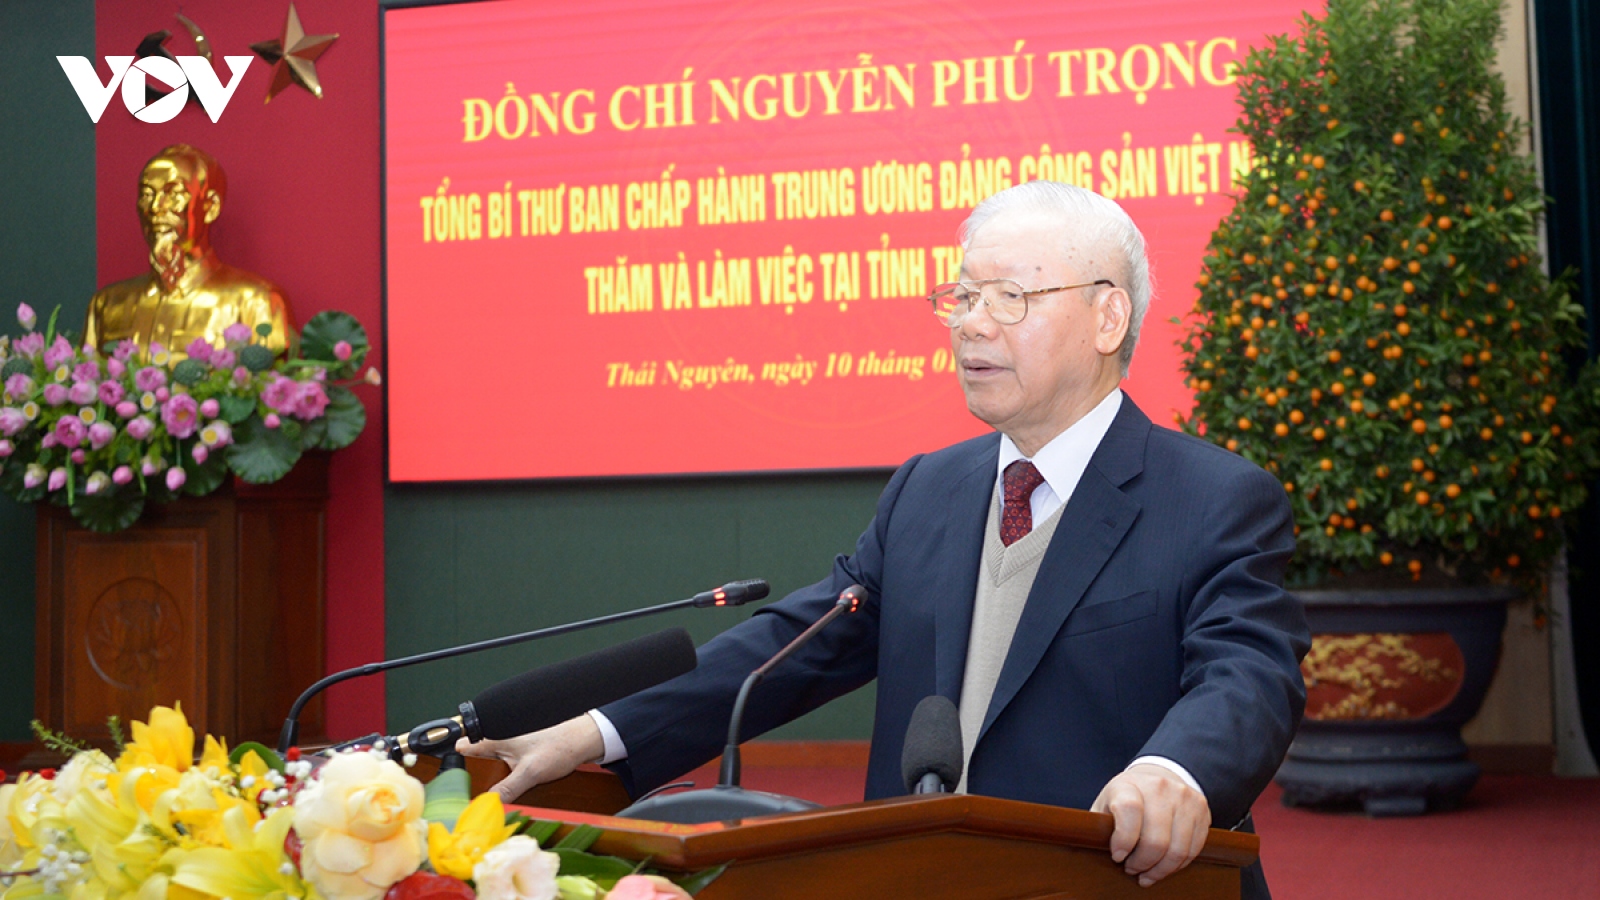 Toàn văn phát biểu của Tổng Bí thư nhân dịp về thăm, chúc Tết tại Thái Nguyên